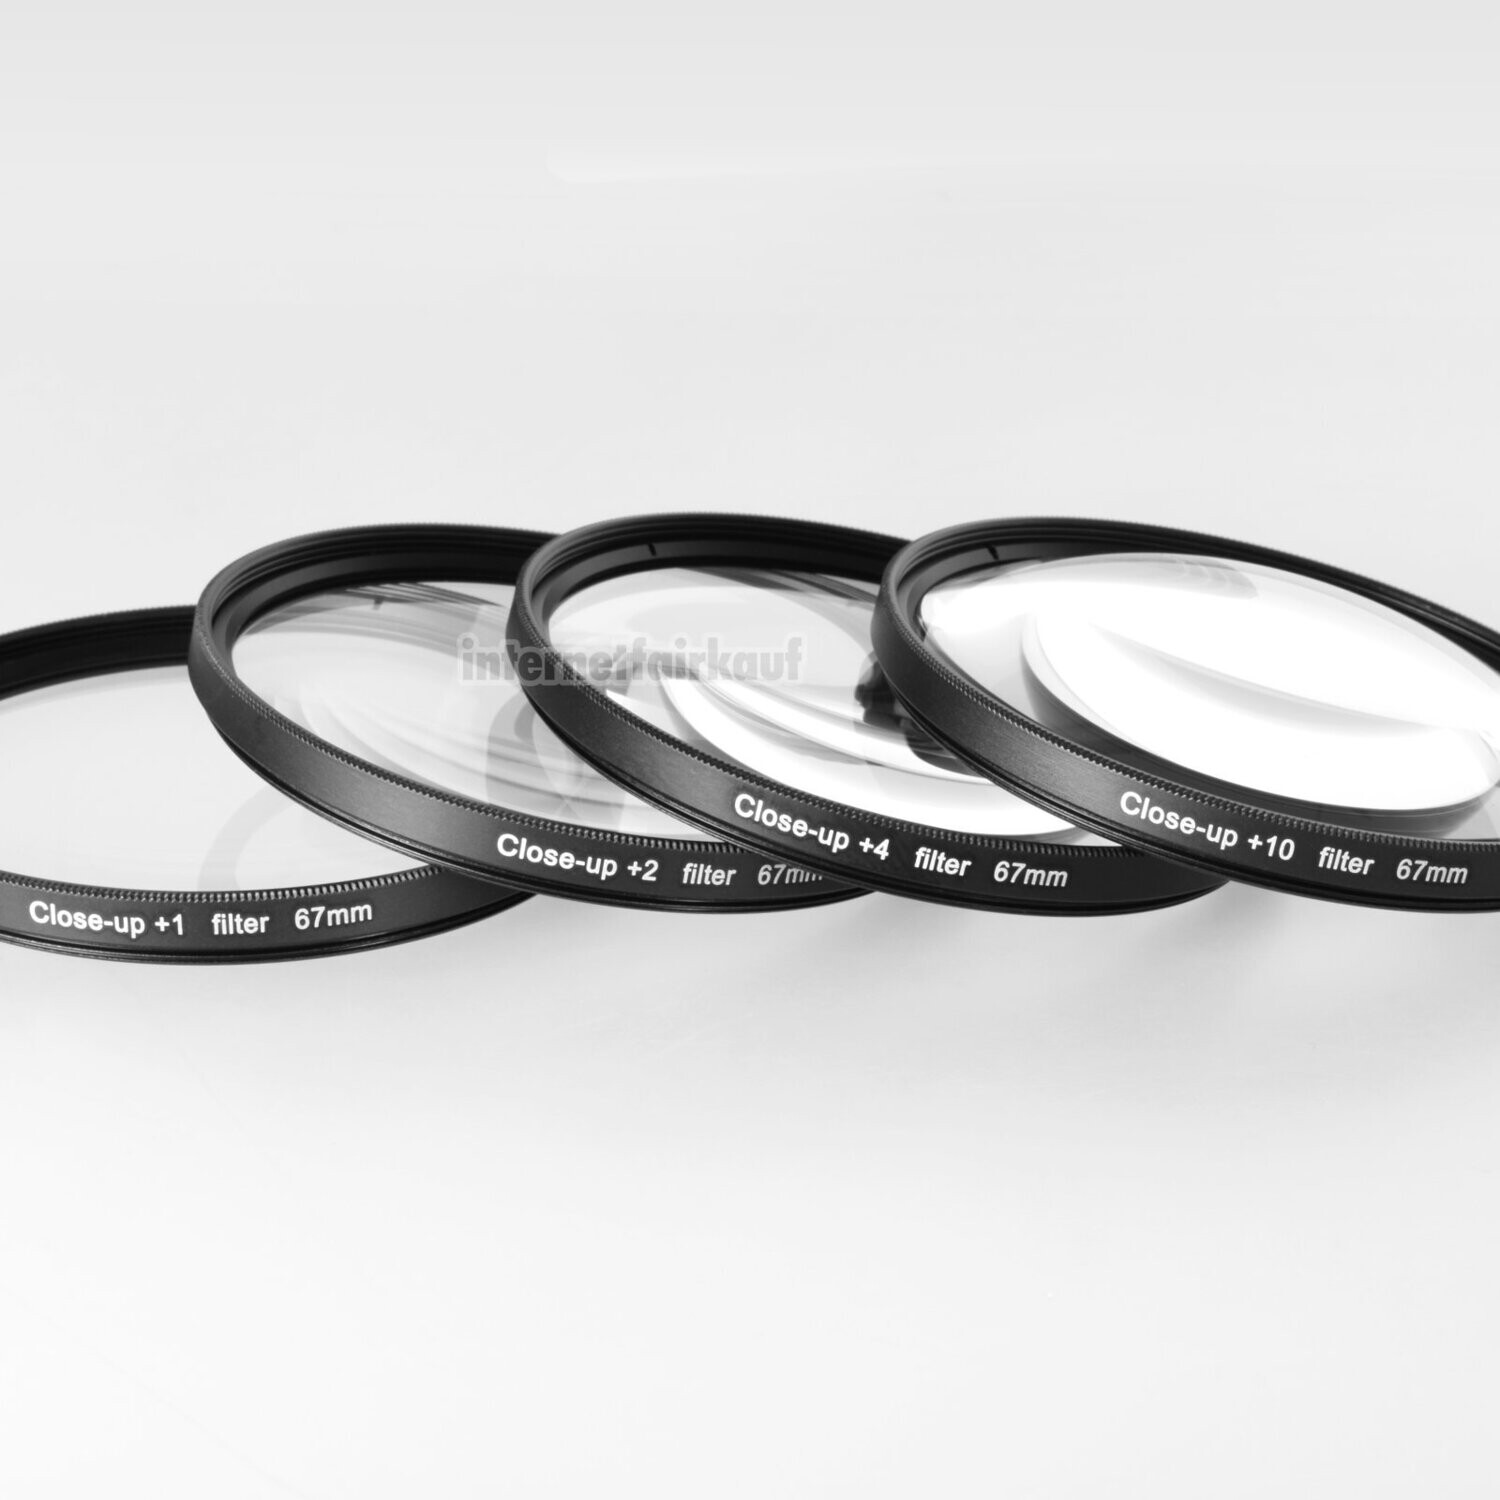 Close-Up Nahlinsen Set passend für Nikon Coolpix P900 P950